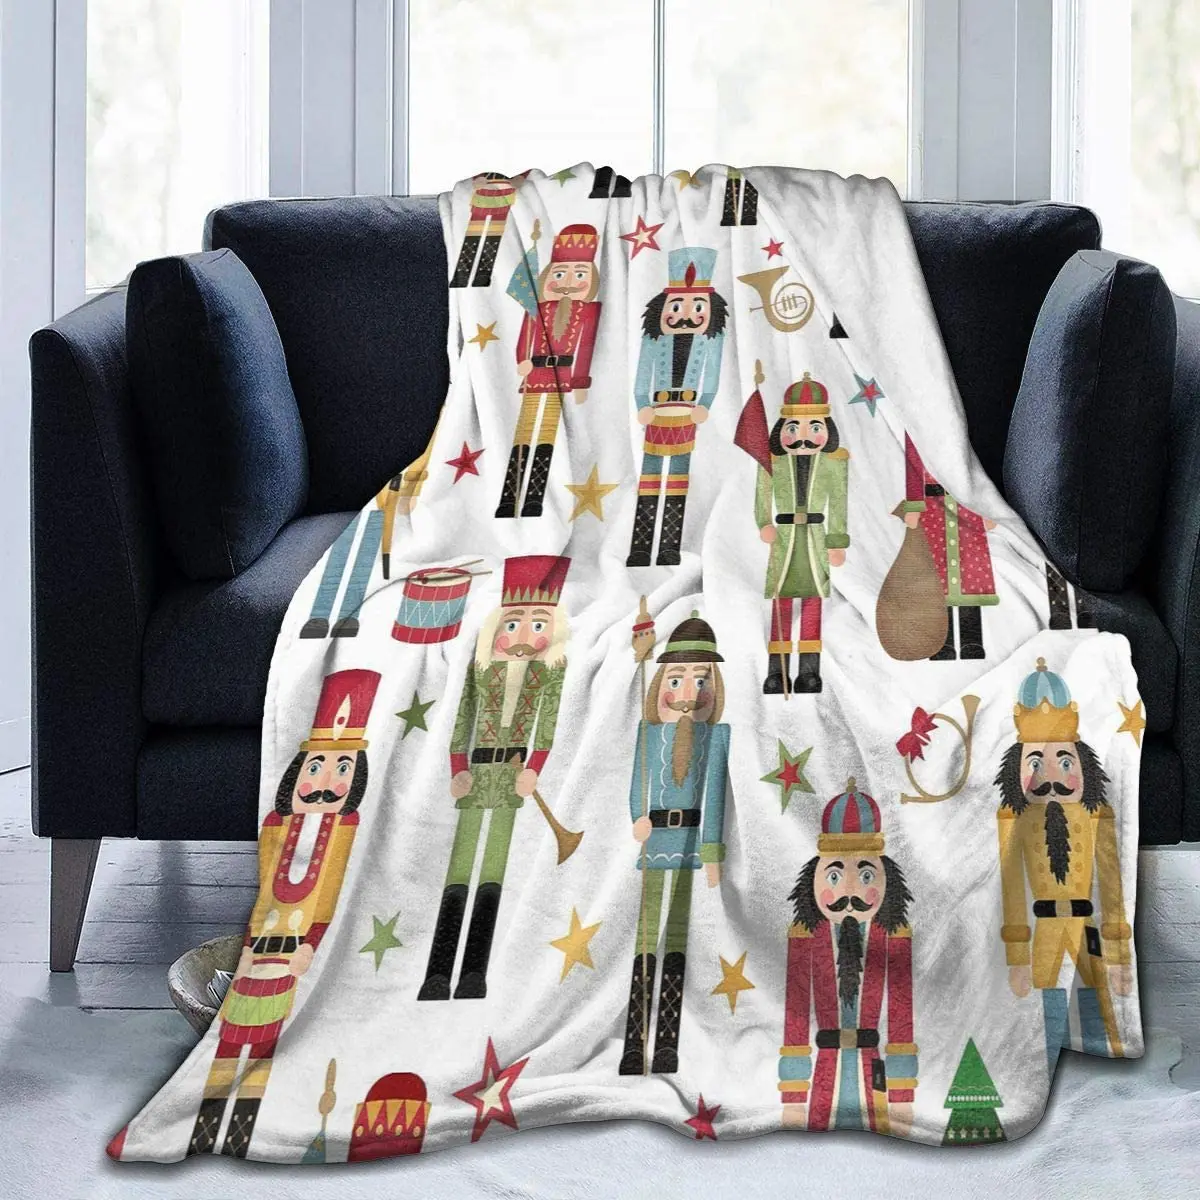 Blanket Nutcracker Christmas Tree Star Throw Blanket Ultra Soft Velvet Blanket Lightweight Bed Blanket Quilt Durable Home Decor